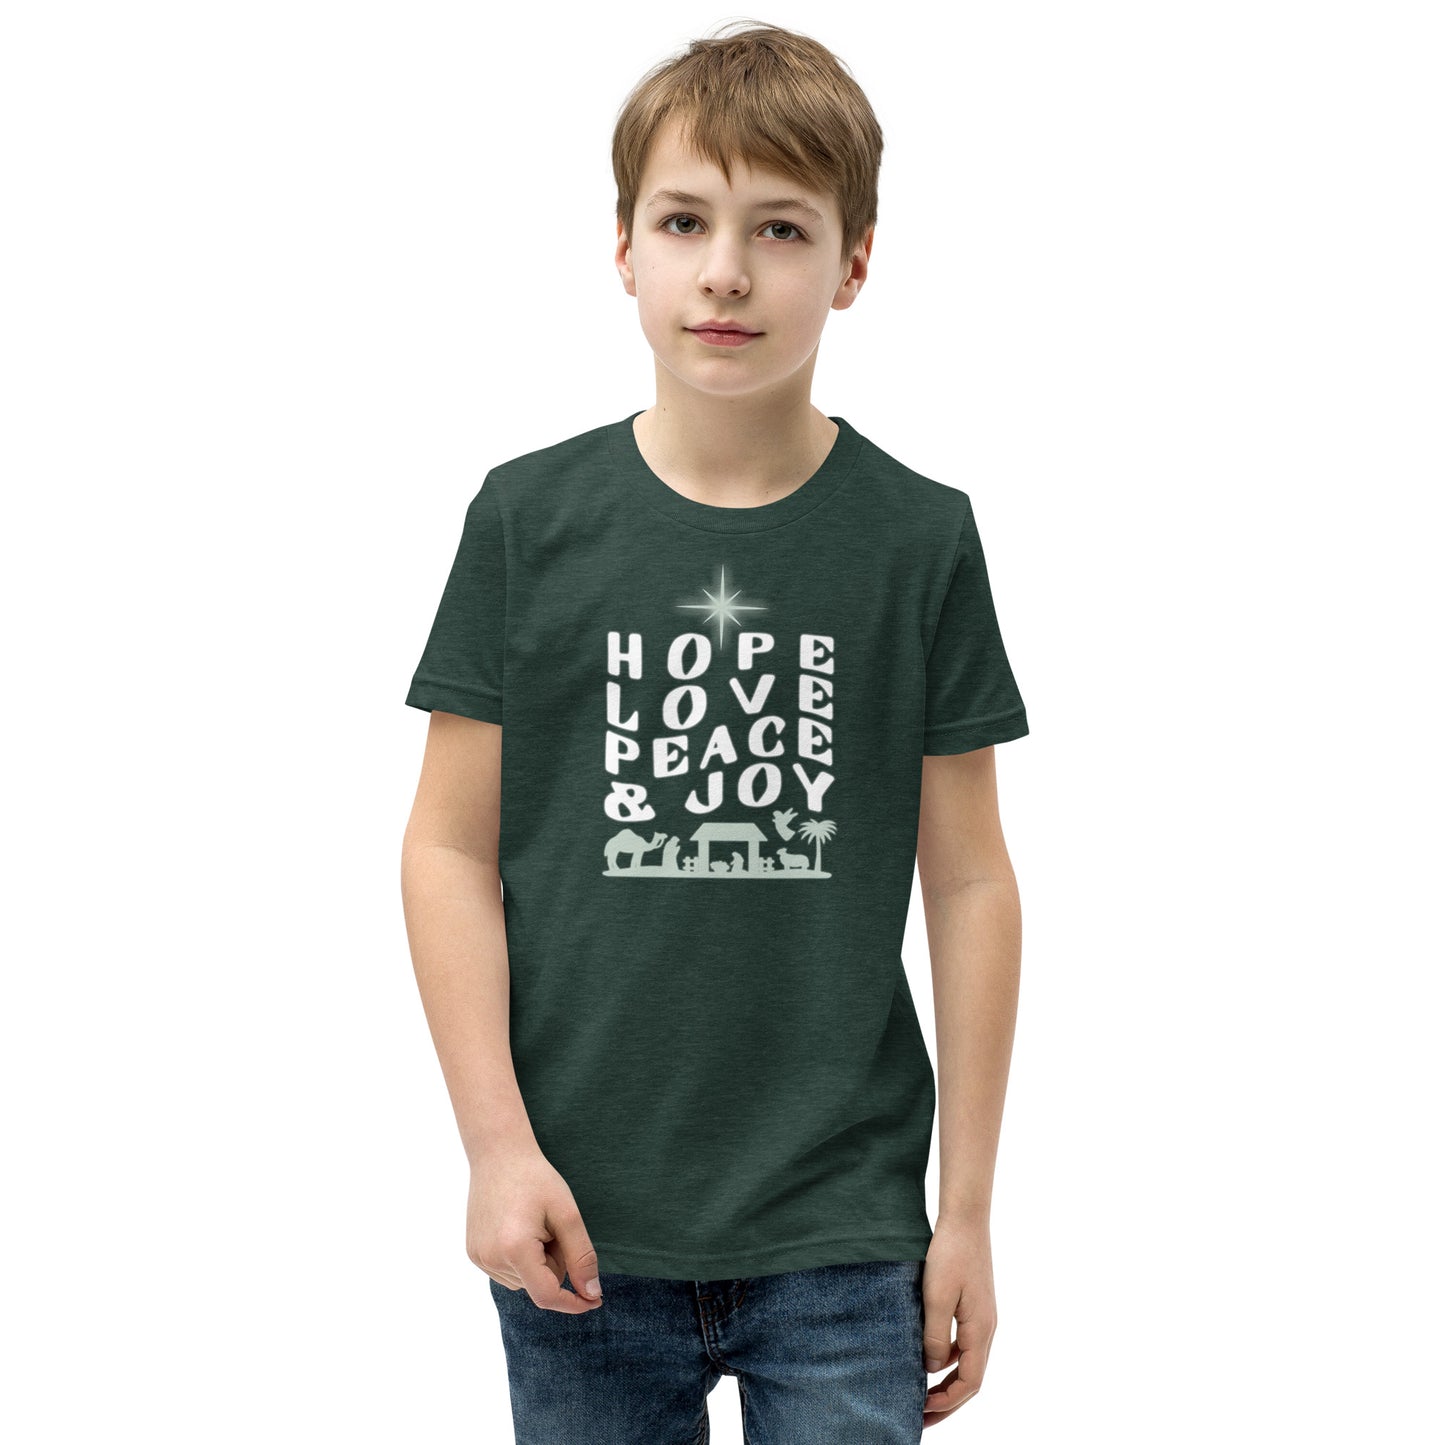 HFKidz YOUTH SIZE T-Shirt